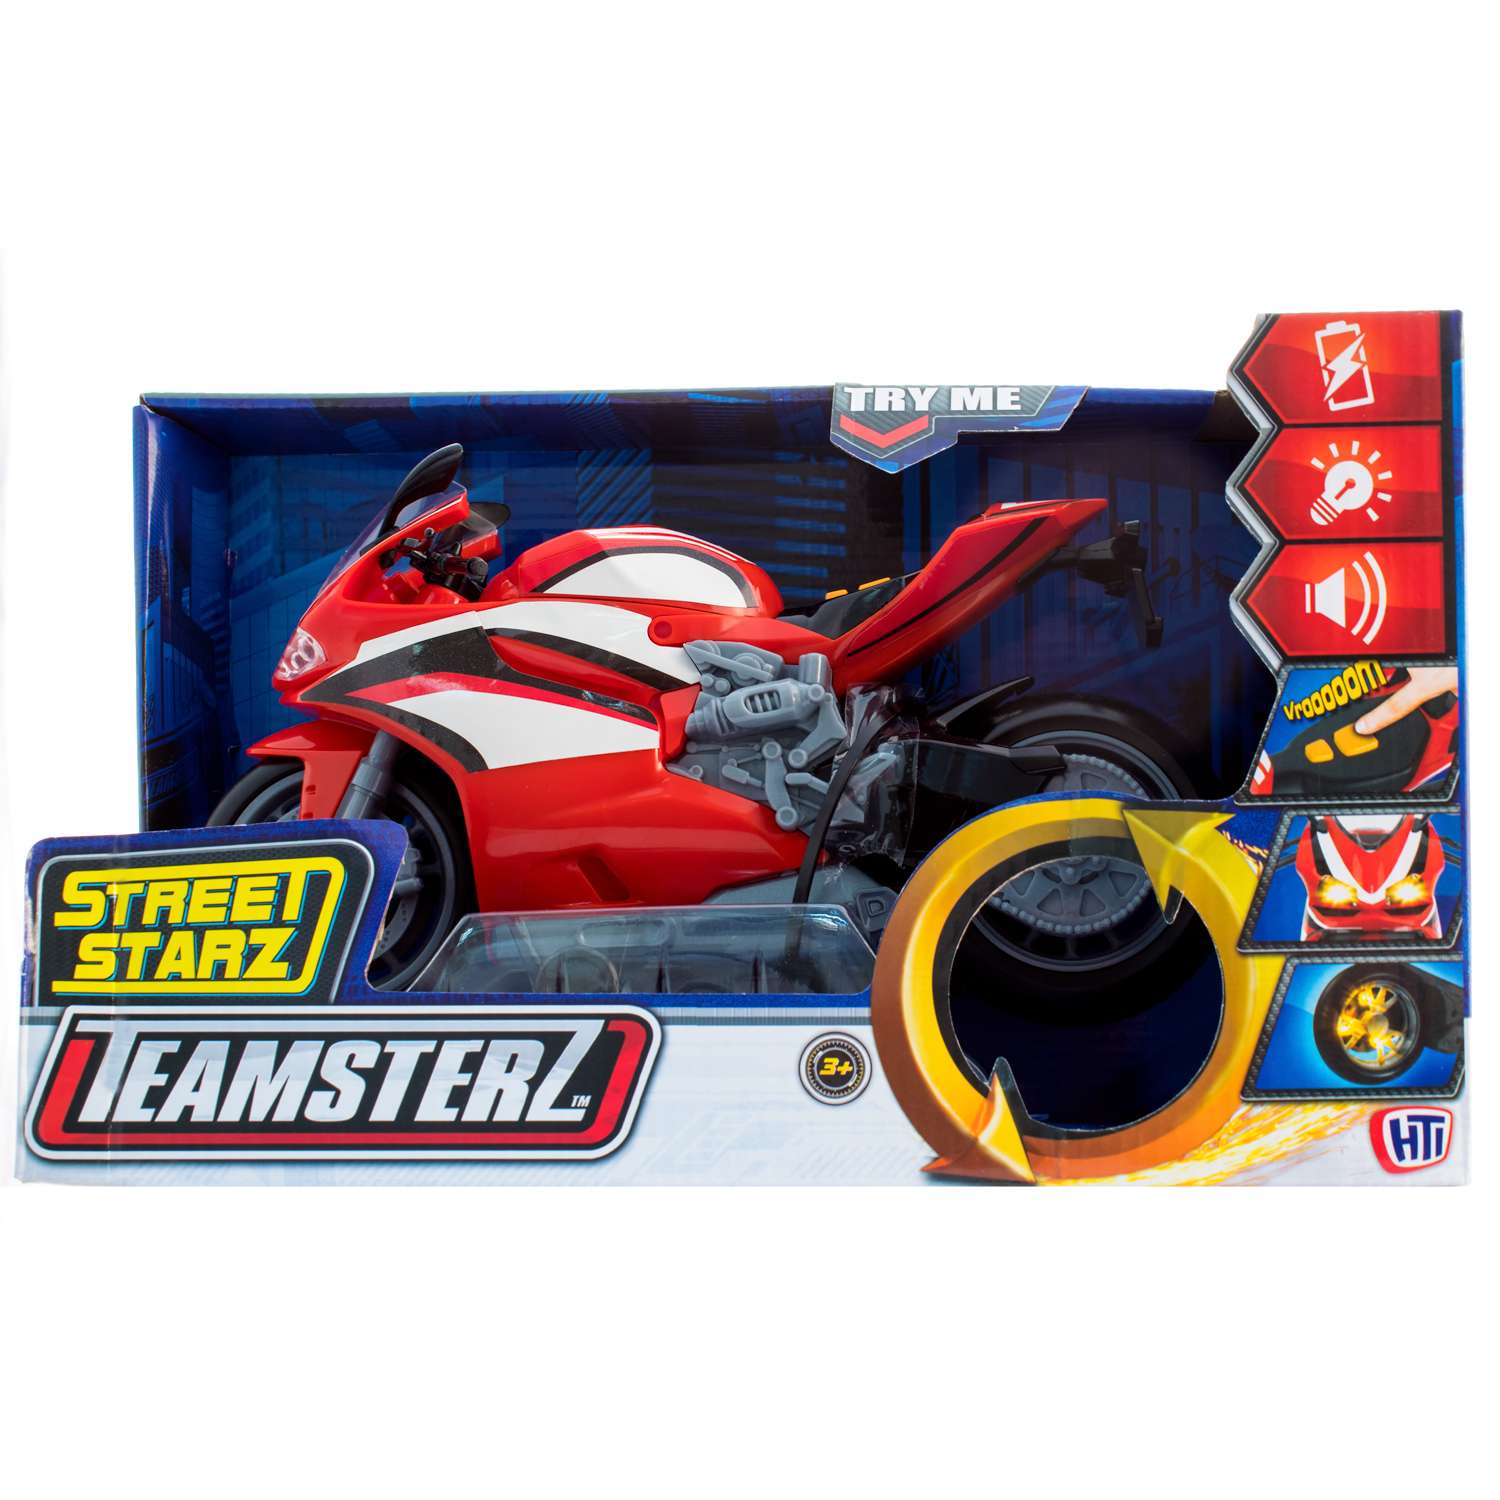 Мотоцикл HTI (Teamsterz) Street Starz Красный 1416881 1416881 - фото 2